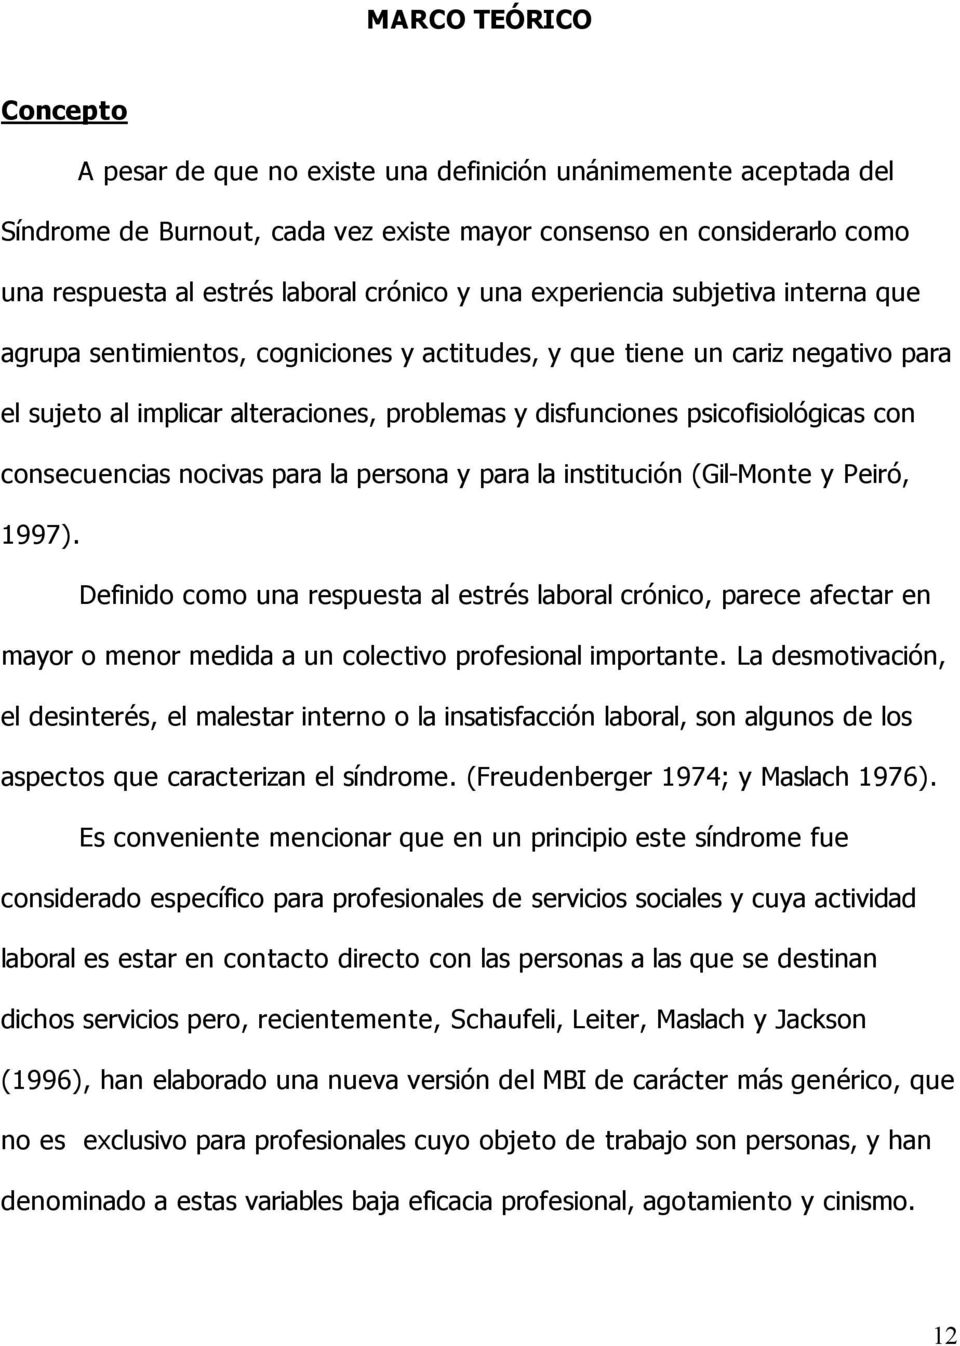 psicofisiológicas con consecuencias nocivas para la persona y para la institución (Gil-Monte y Peiró, 1997).